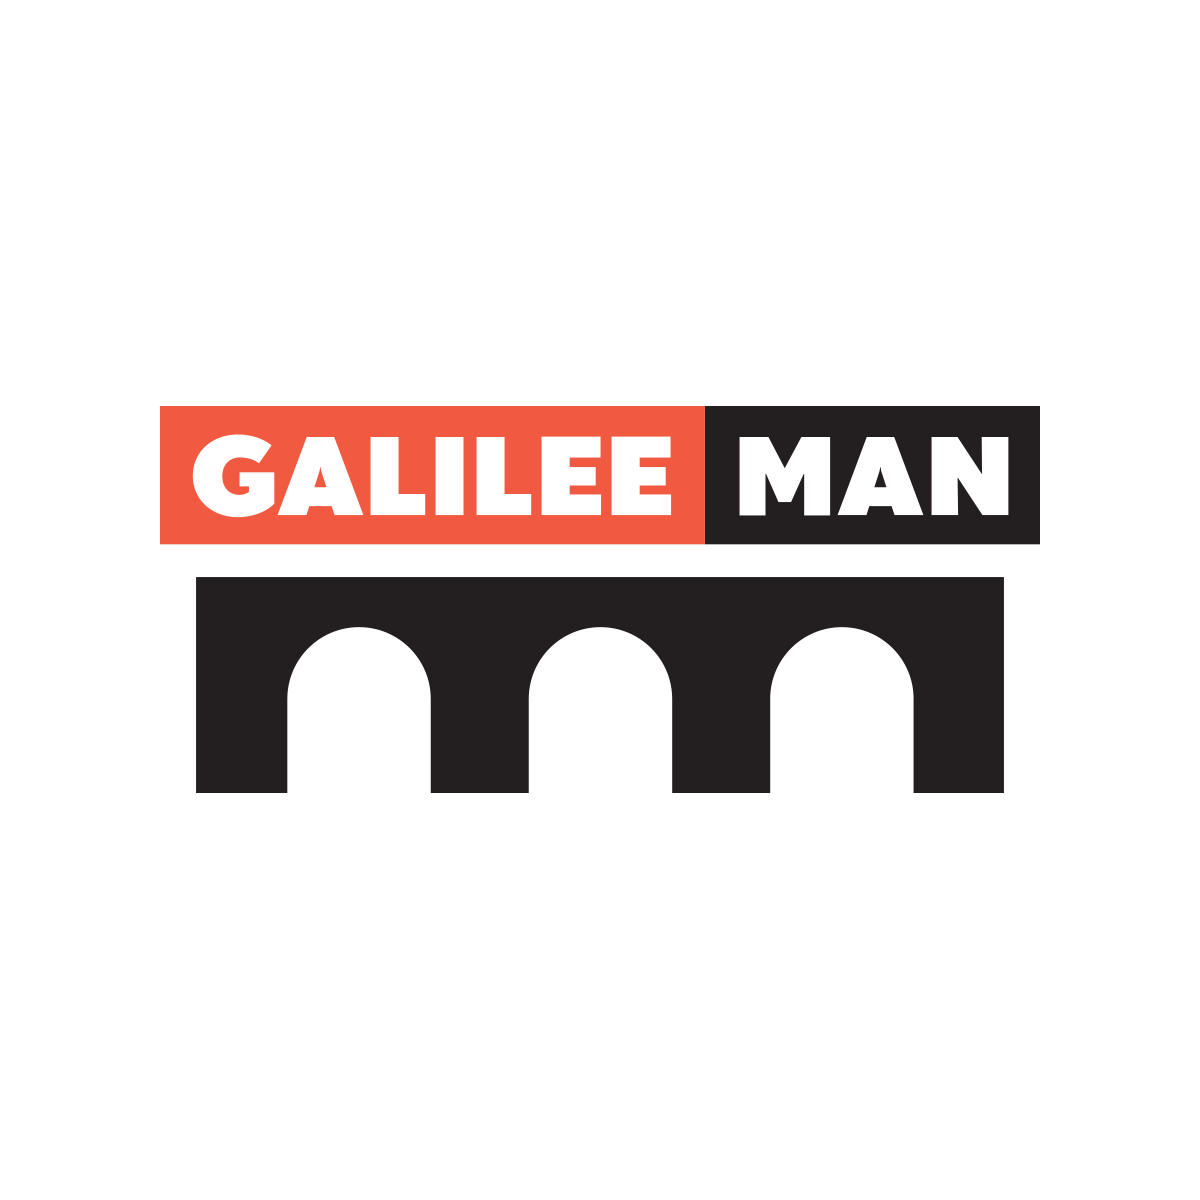 GALILEEMAN 2022 - גליליימן 2022